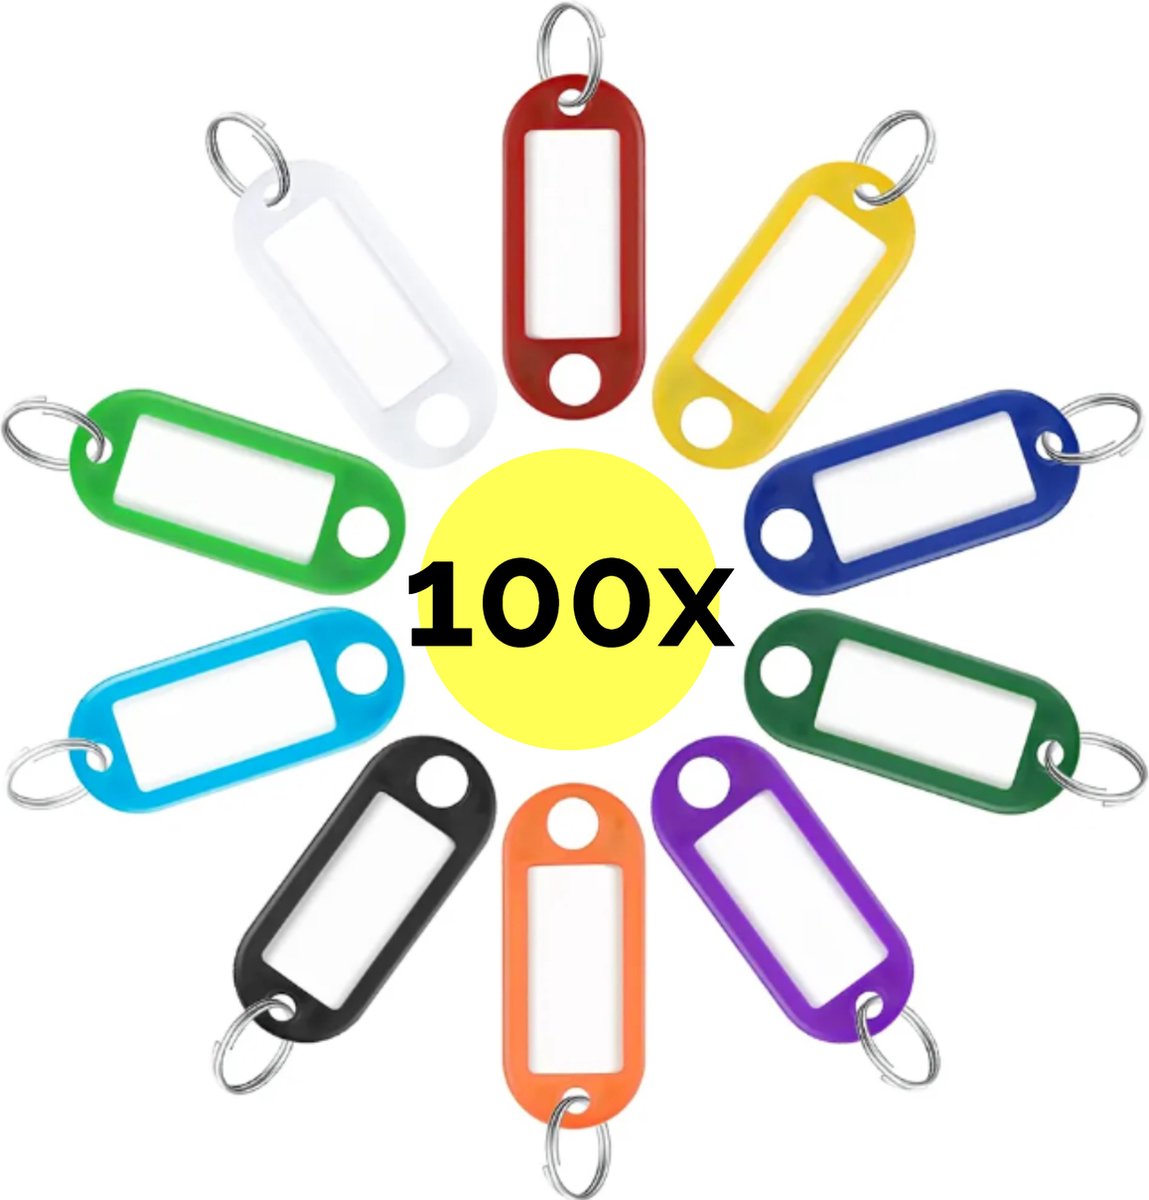 WINTEX Porte Clé Etiquette - 100 pièces - Porte Cle avec